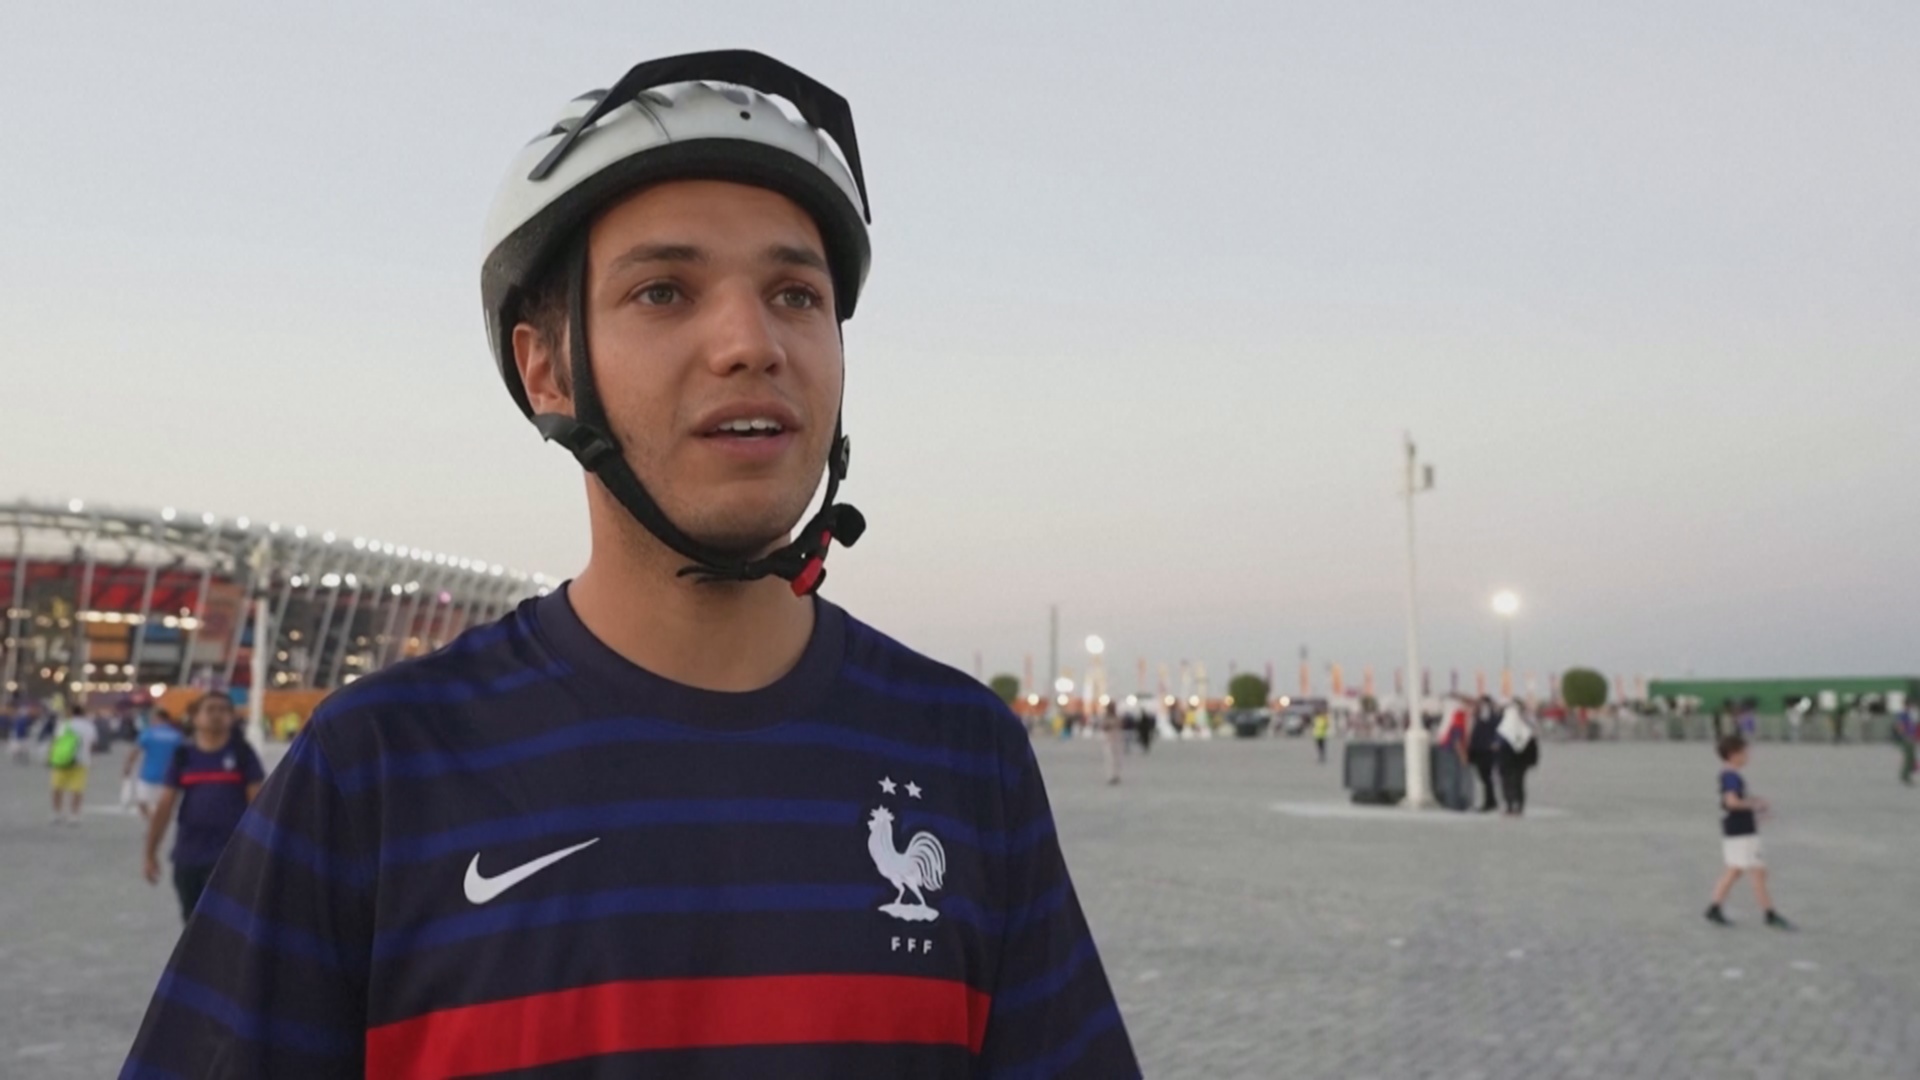 Два француза приехали на велосипедах на ЧМ-2022 в Катаре